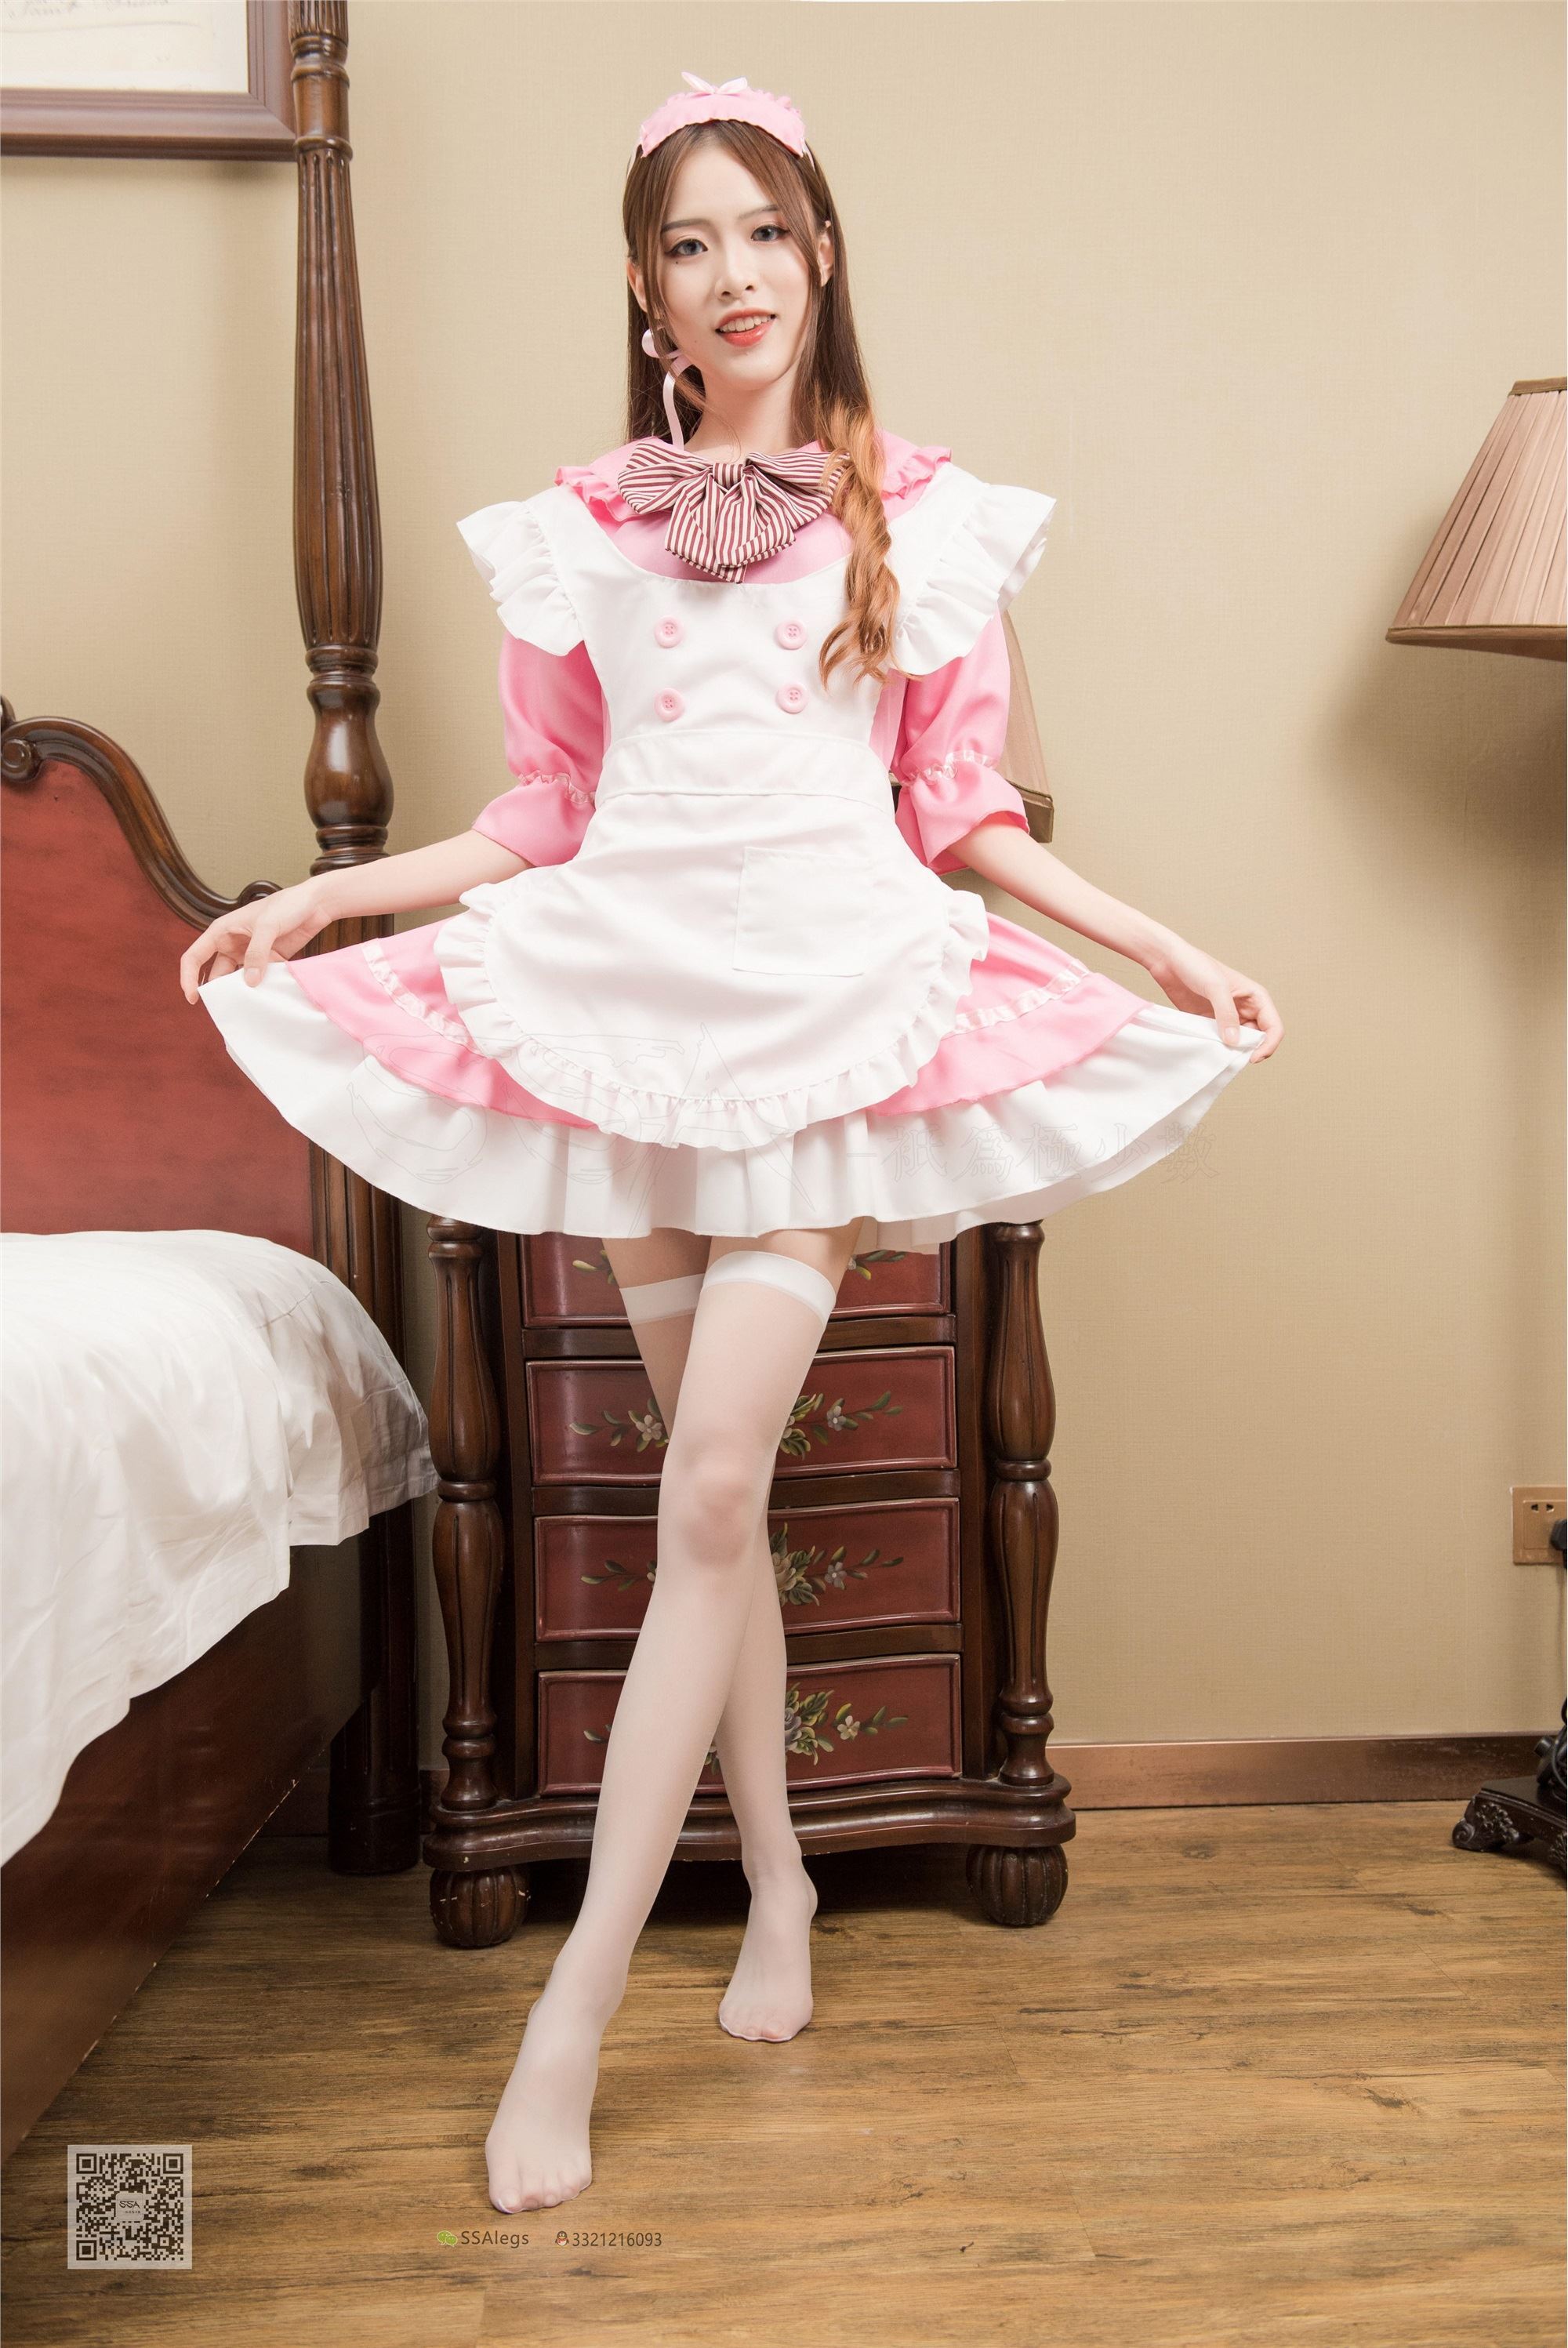 SSA silk society issue 012 little Kiki my Pink Maid